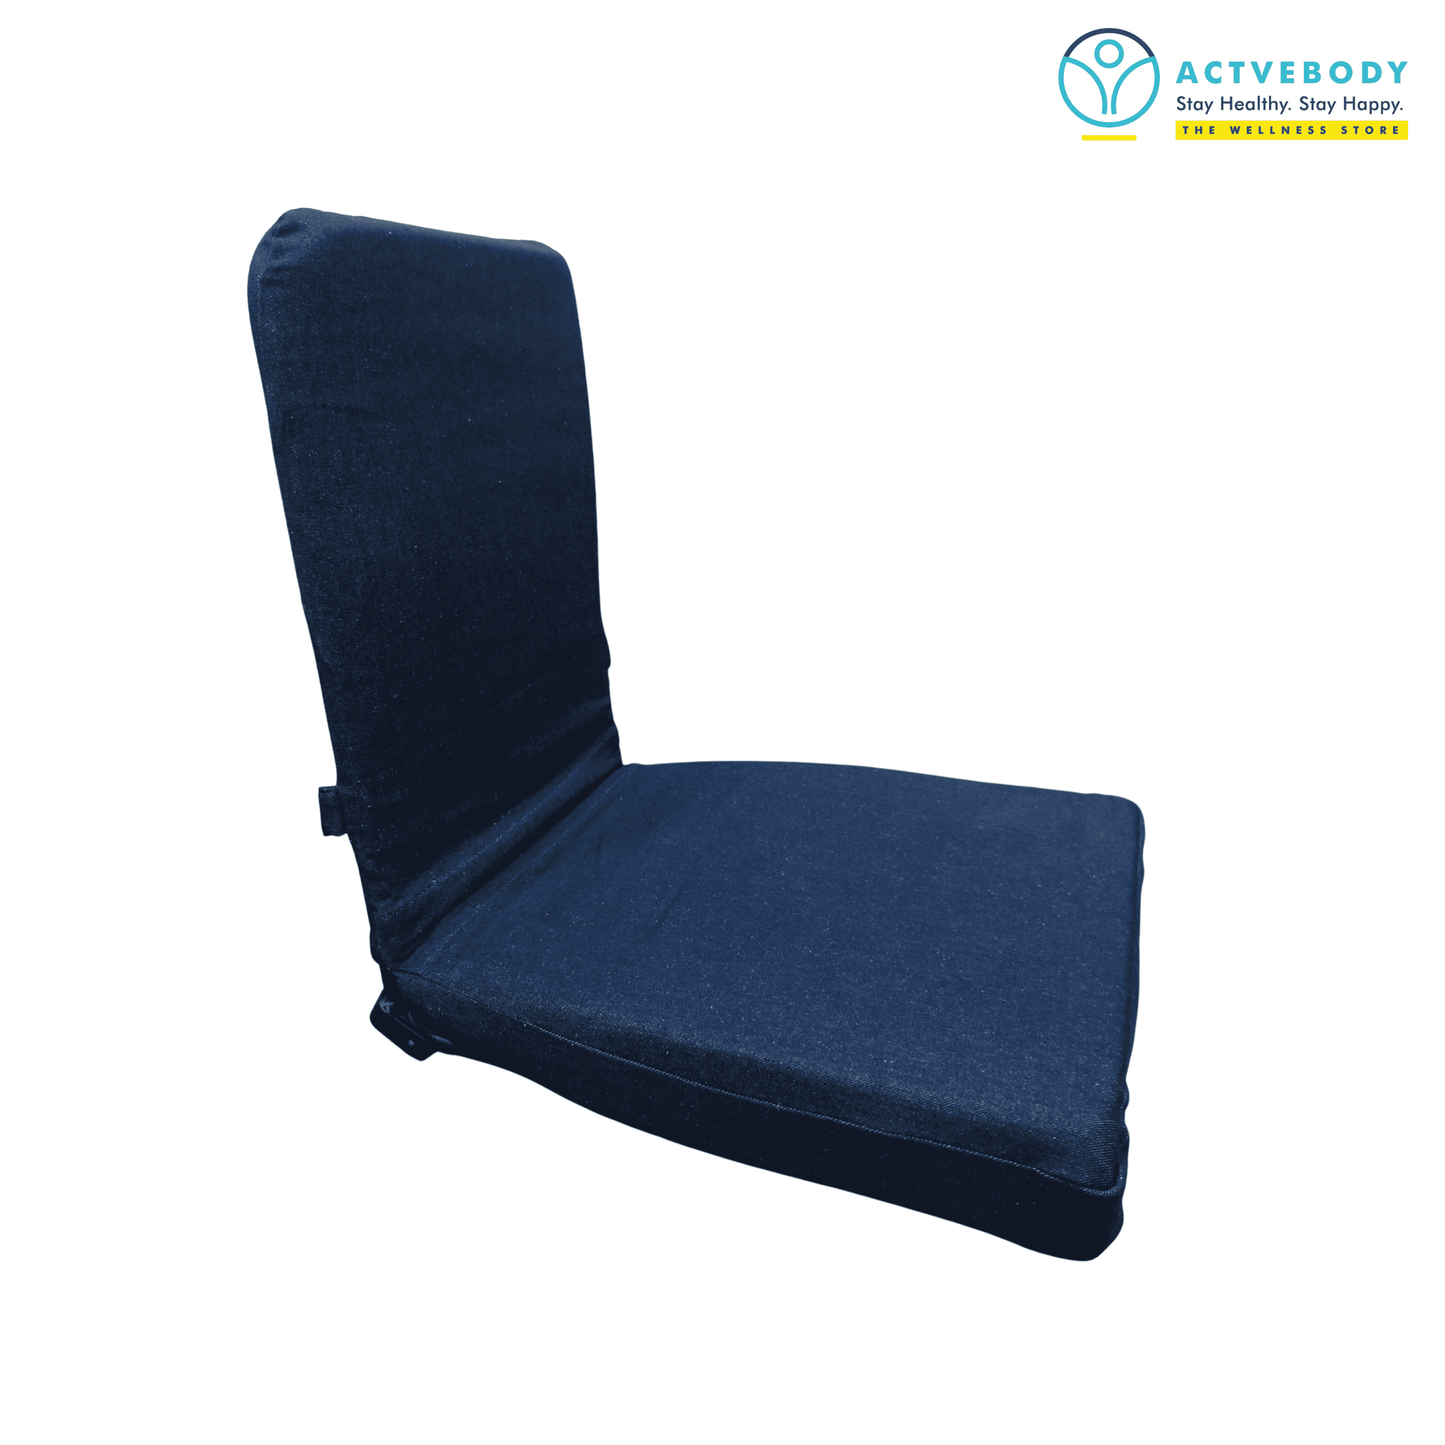 Actvebody Meditation Chair Blue Demin | Actvebody